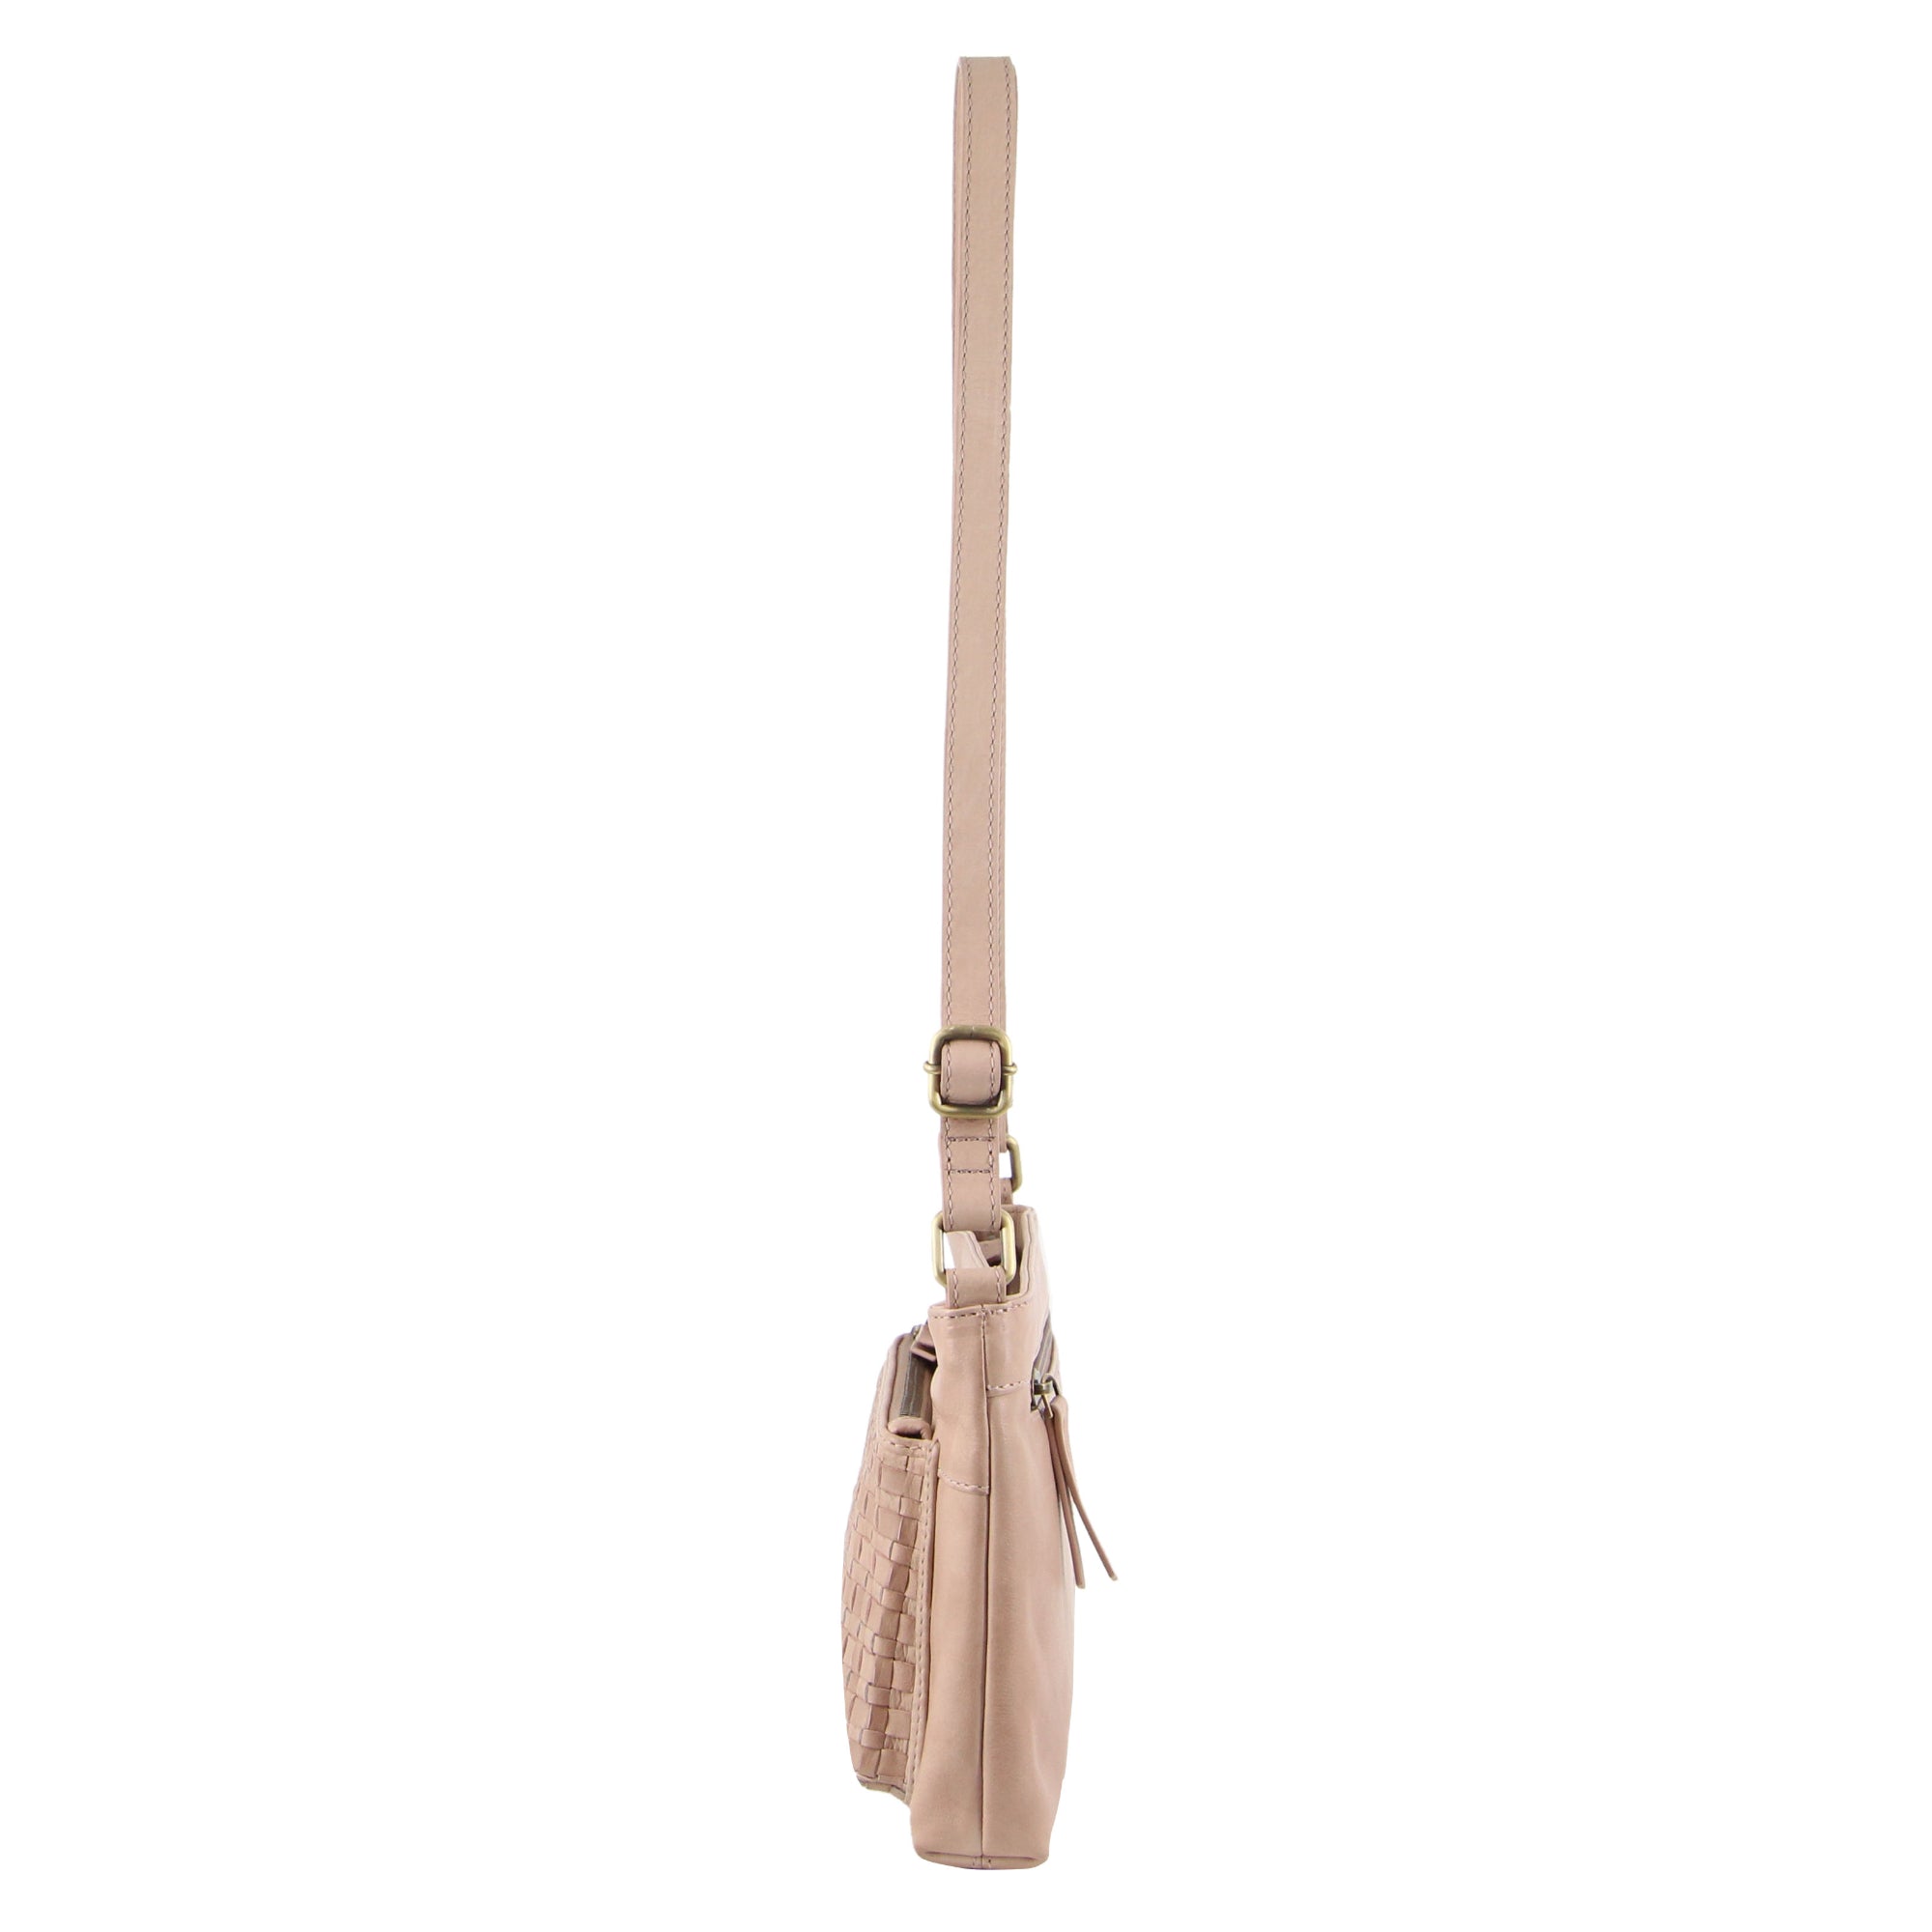 Pierre Cardin Woven Leather Ladies Cross-Body Bag in Dusty Pink